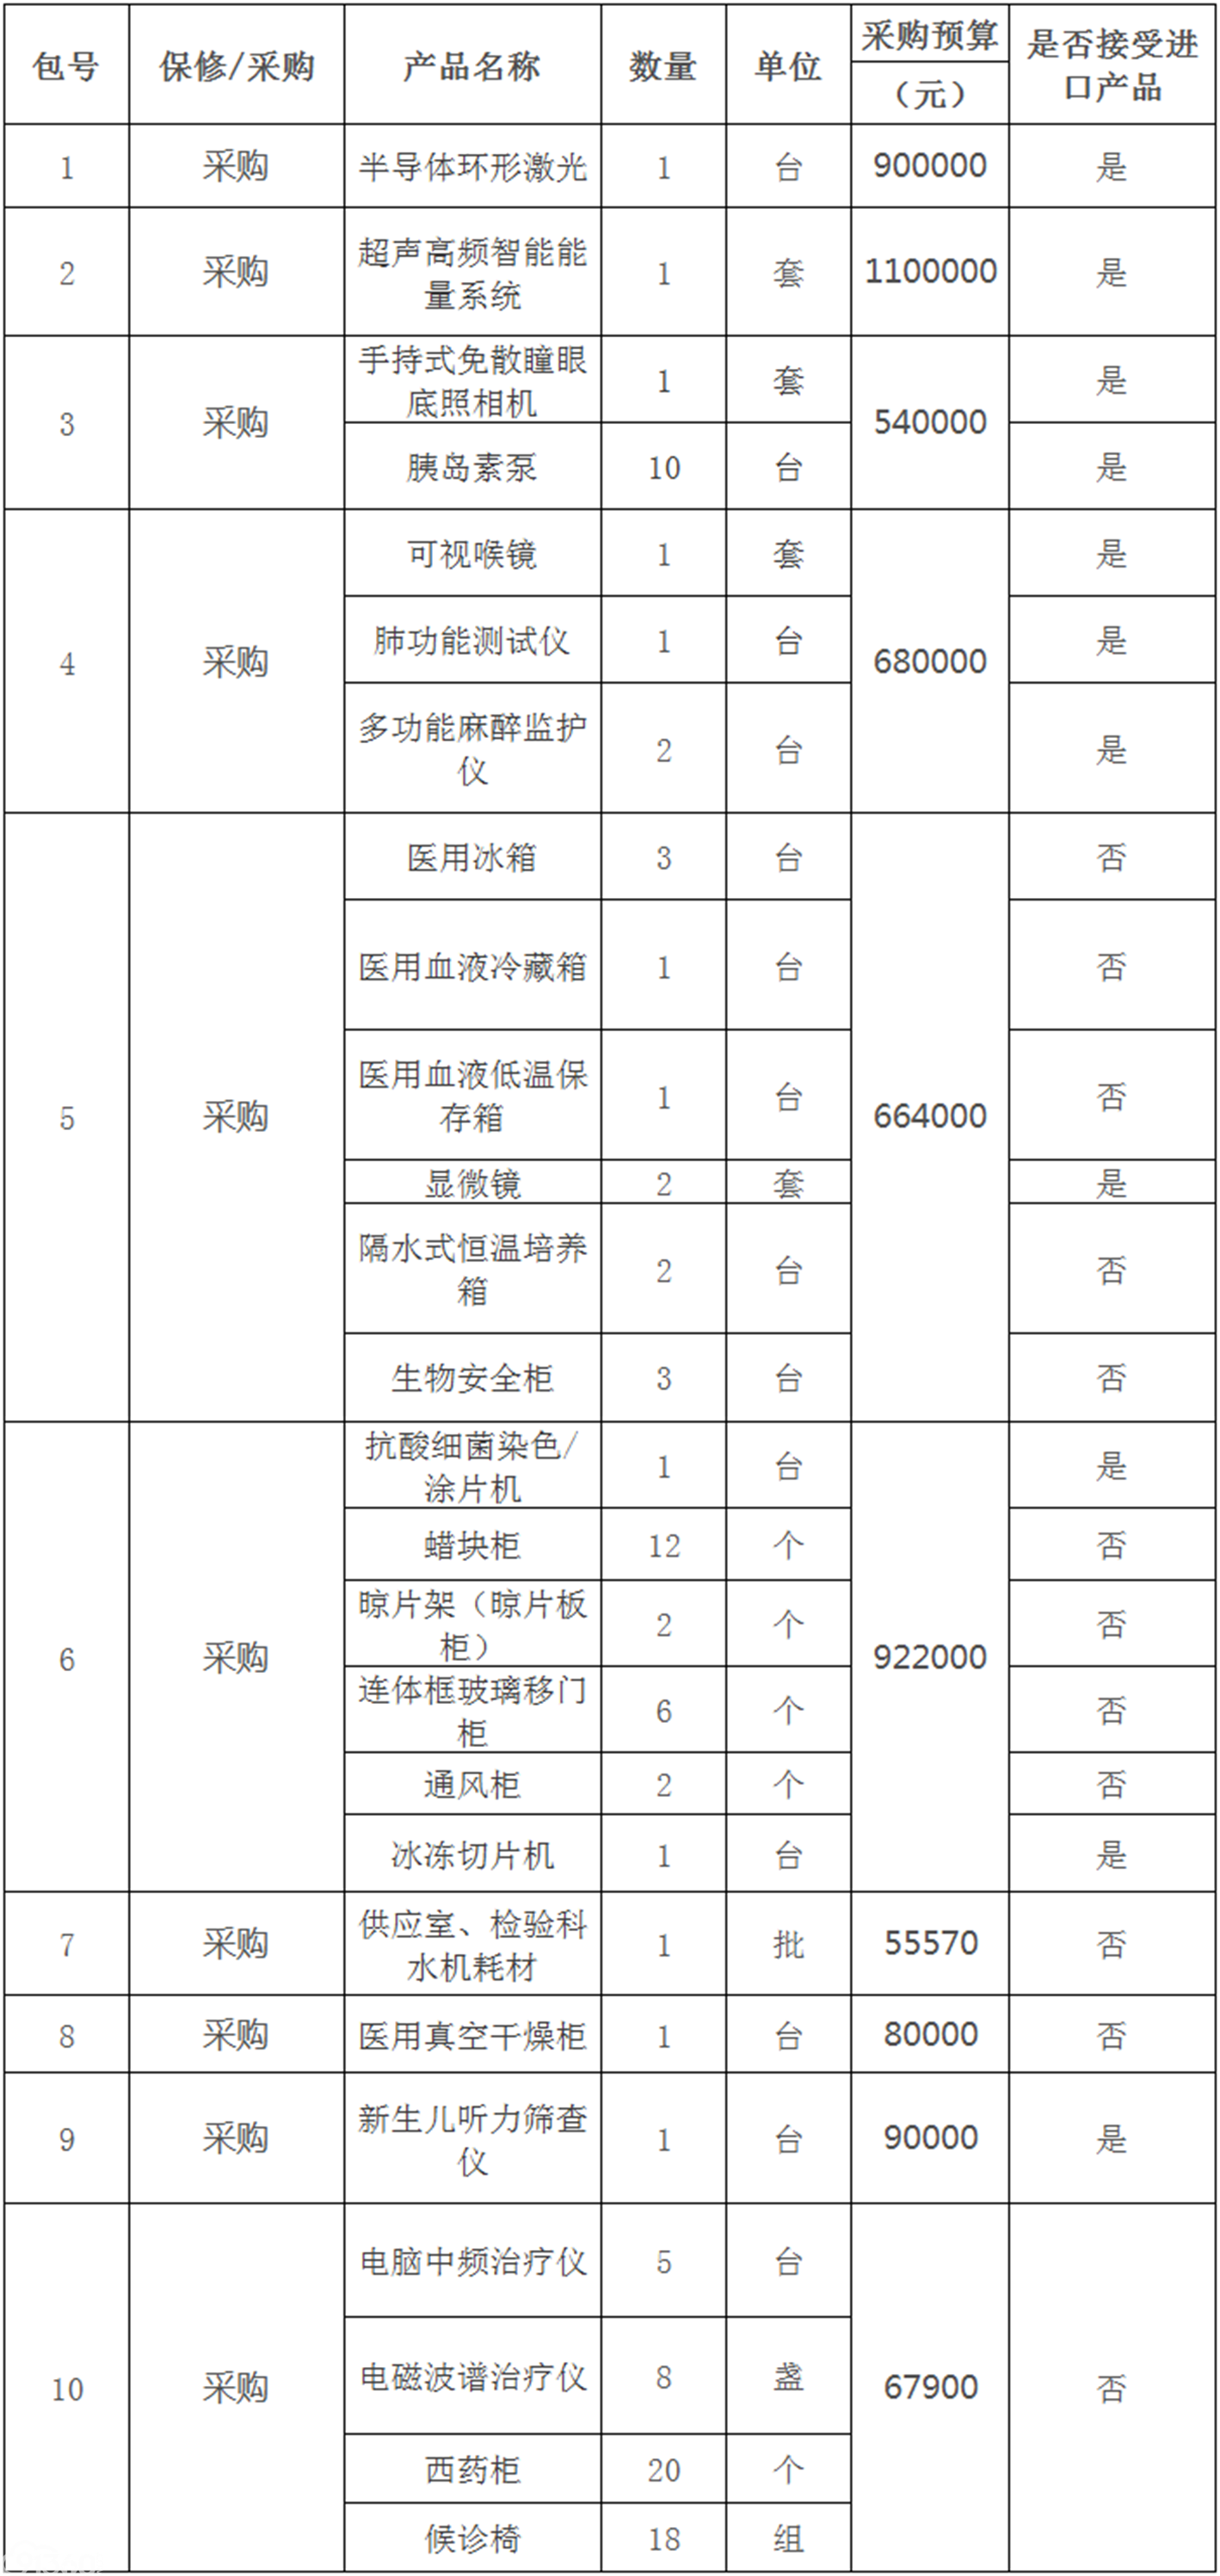 禄丰县人民医院医疗设备(半导体环形激光、超声高频智能能量系统）采购项目招标公告